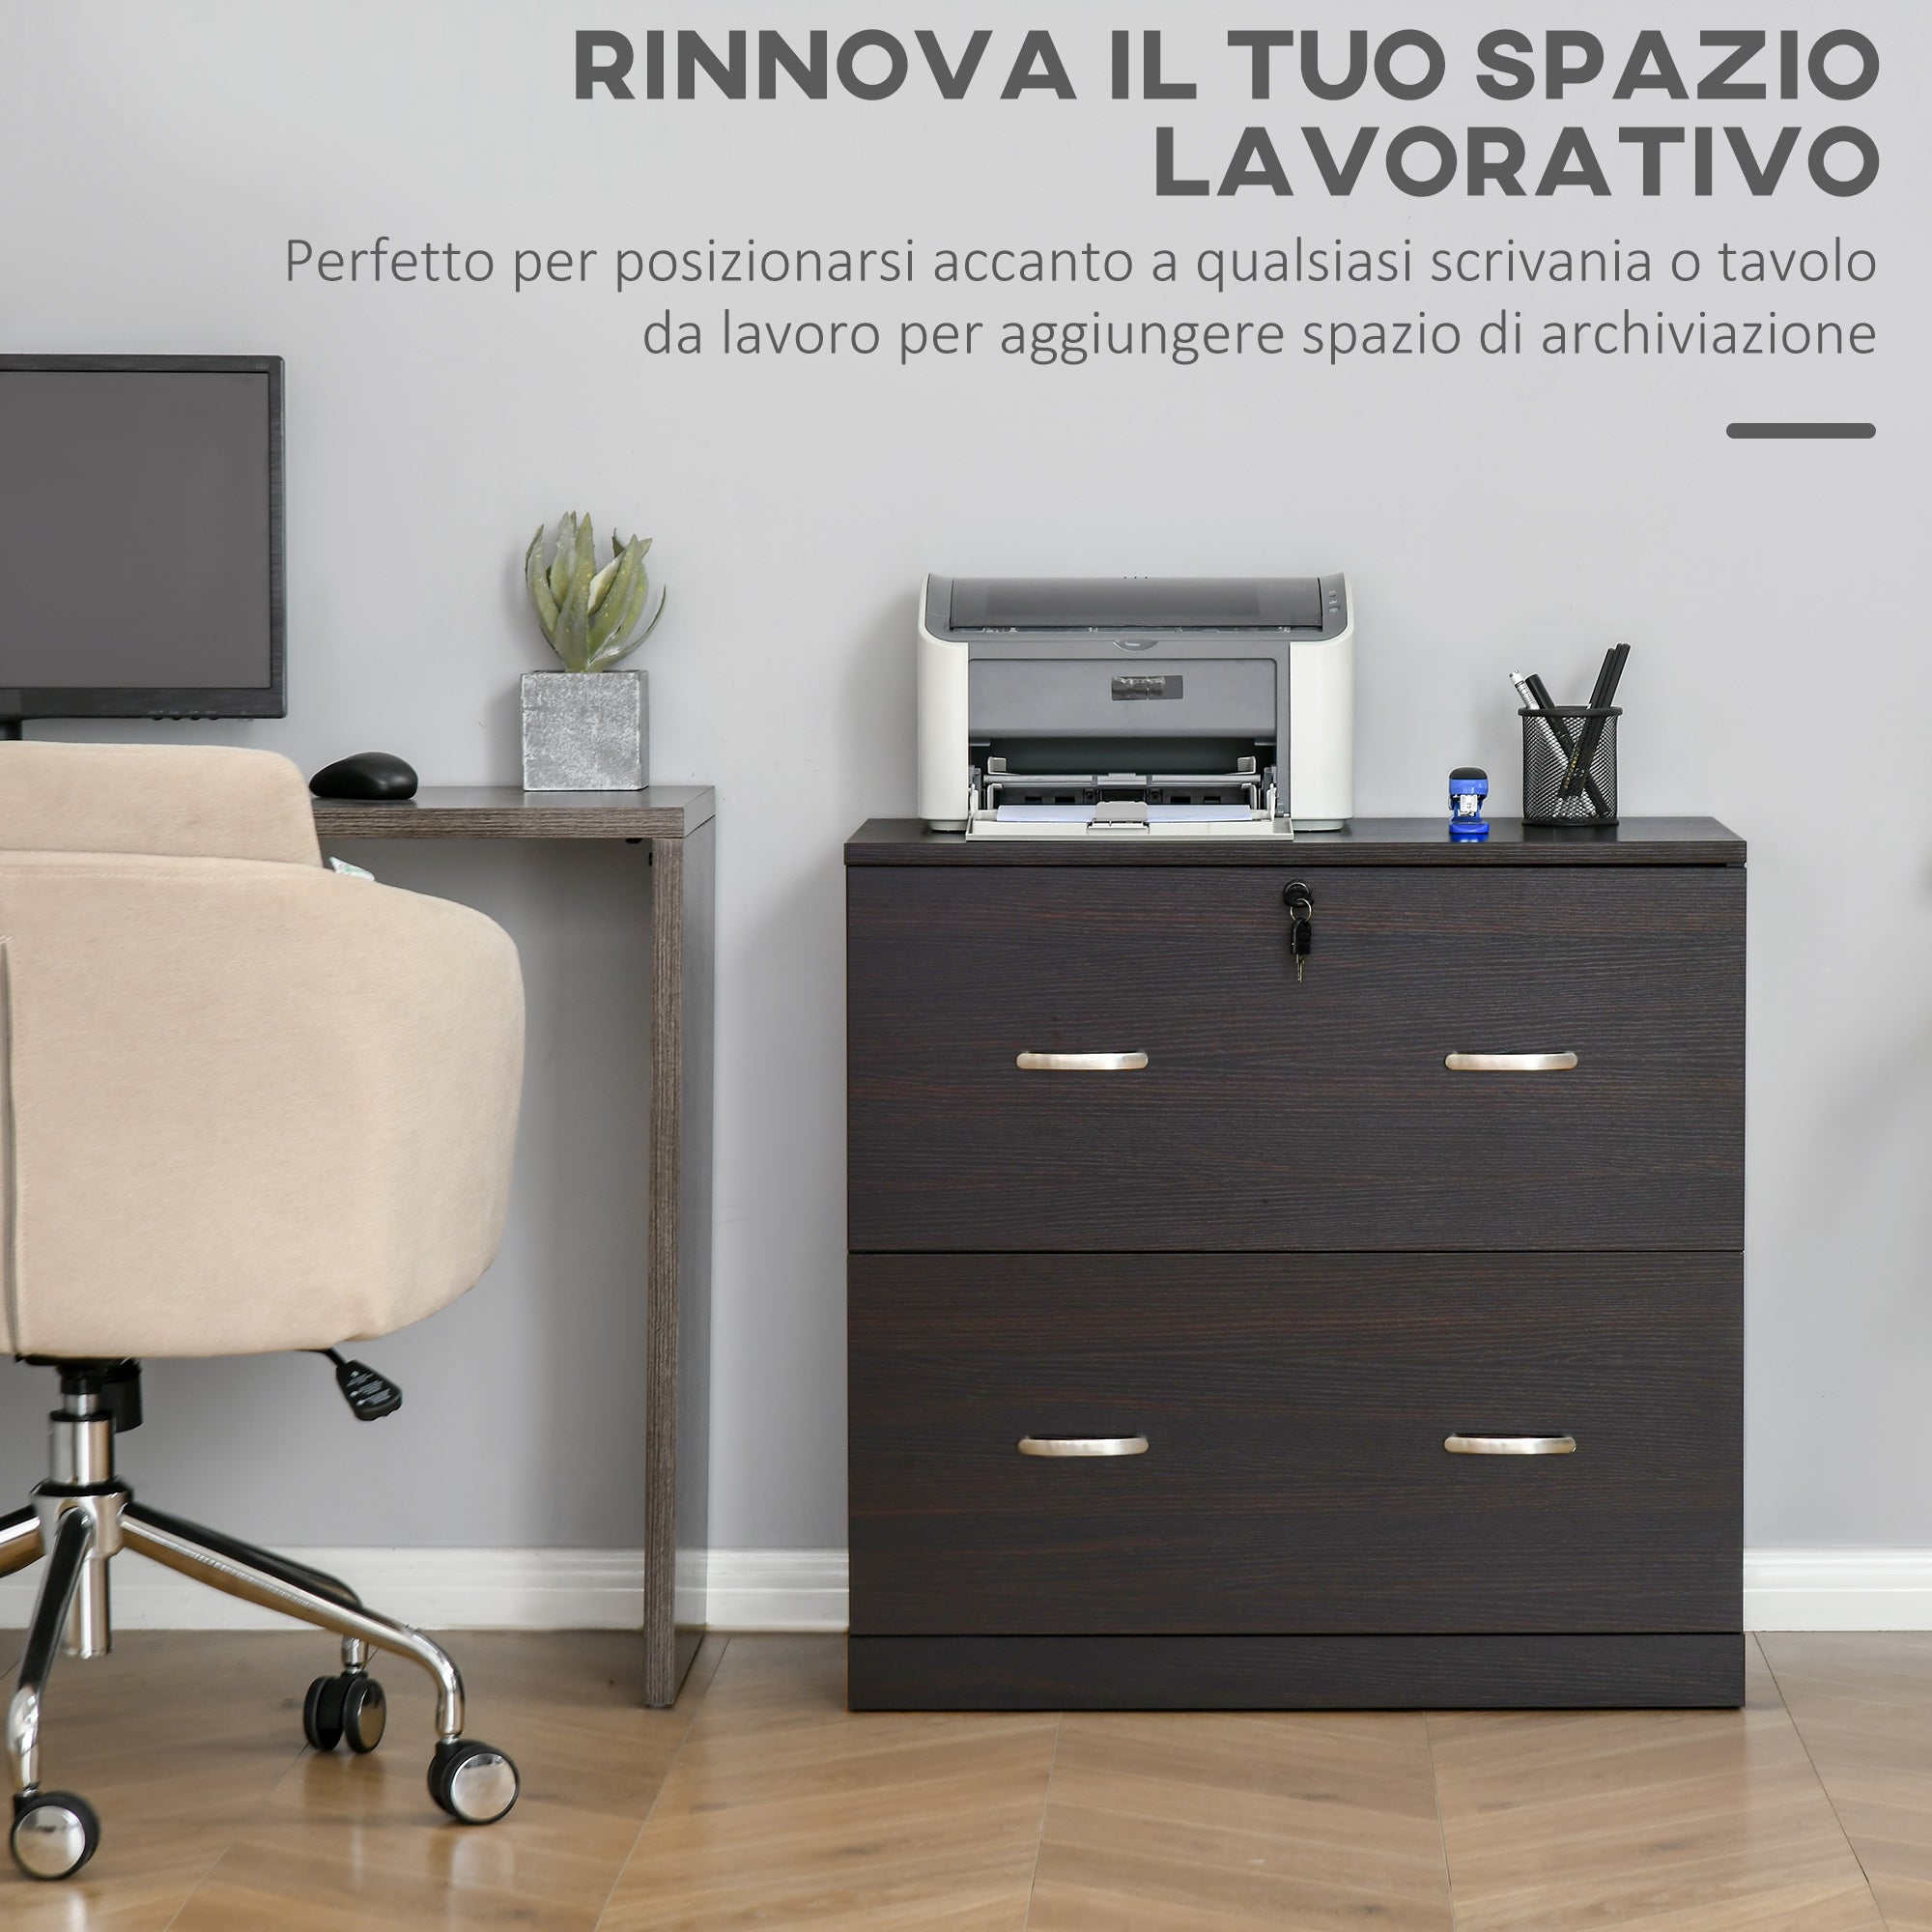 EASYCOMFORT Cassettiera Ufficio in Legno con 2 Cassetti, Serratura e 2  Chiavi, Color Noce